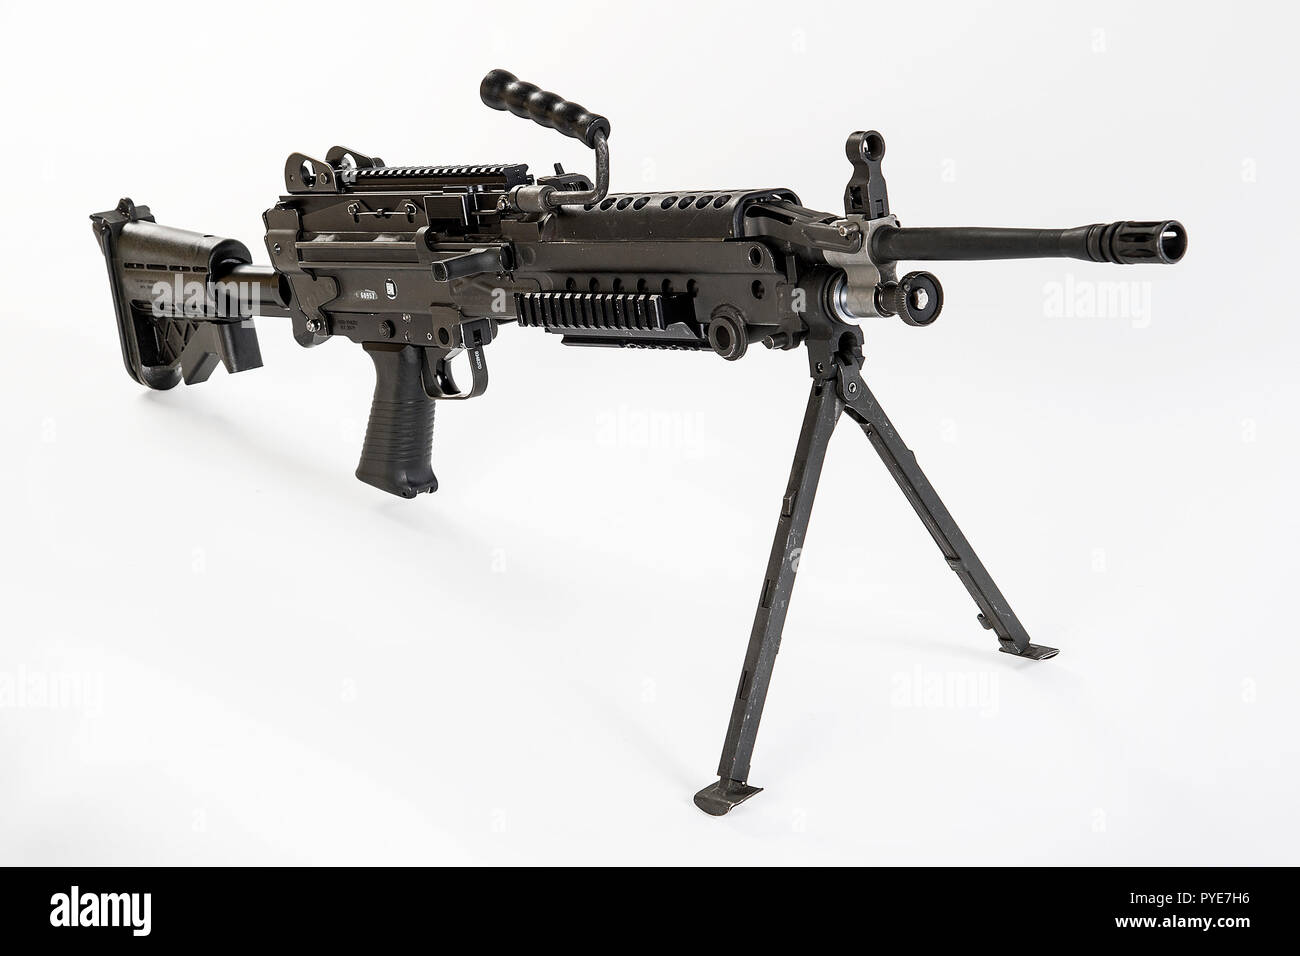 Il M249 Light machine gun, precedentemente indicato la M249 Squad Arma automatica (SAW) e formalmente scritta come macchina leggera pistola, 5,56 mm, M249, è l'adattamento americano del belga FN minimi, una luce mitragliatrice fabbricati dalla società belga FN Herstal (FN). L'arma è stata introdotta nel 1984 dopo essere stato giudicato il più efficace di un certo numero di candidati armi per affrontare il problema della mancanza di potenza di fuoco automatico in piccole unità. Il M249 fornisce squadre di fanteria con un alto tasso di fuoco di una mitragliatrice combinato con la precisione e la portabilità che si avvicina a quella di un fucile. Il M249 è un gas o Foto Stock